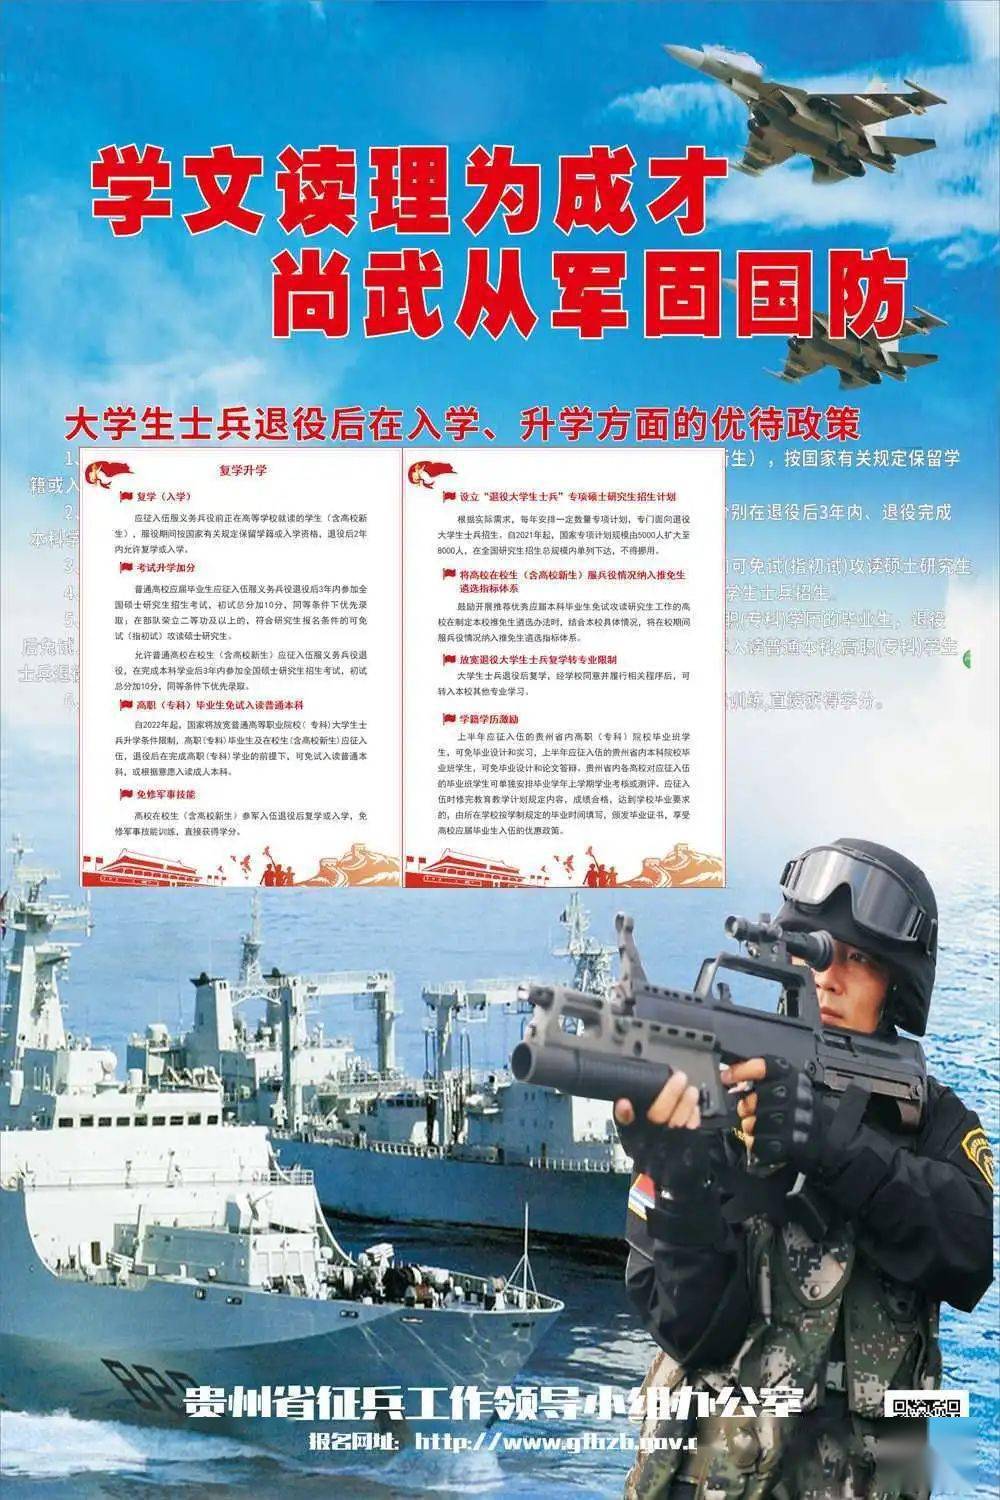 2020年贵州省征兵宣传海报来袭